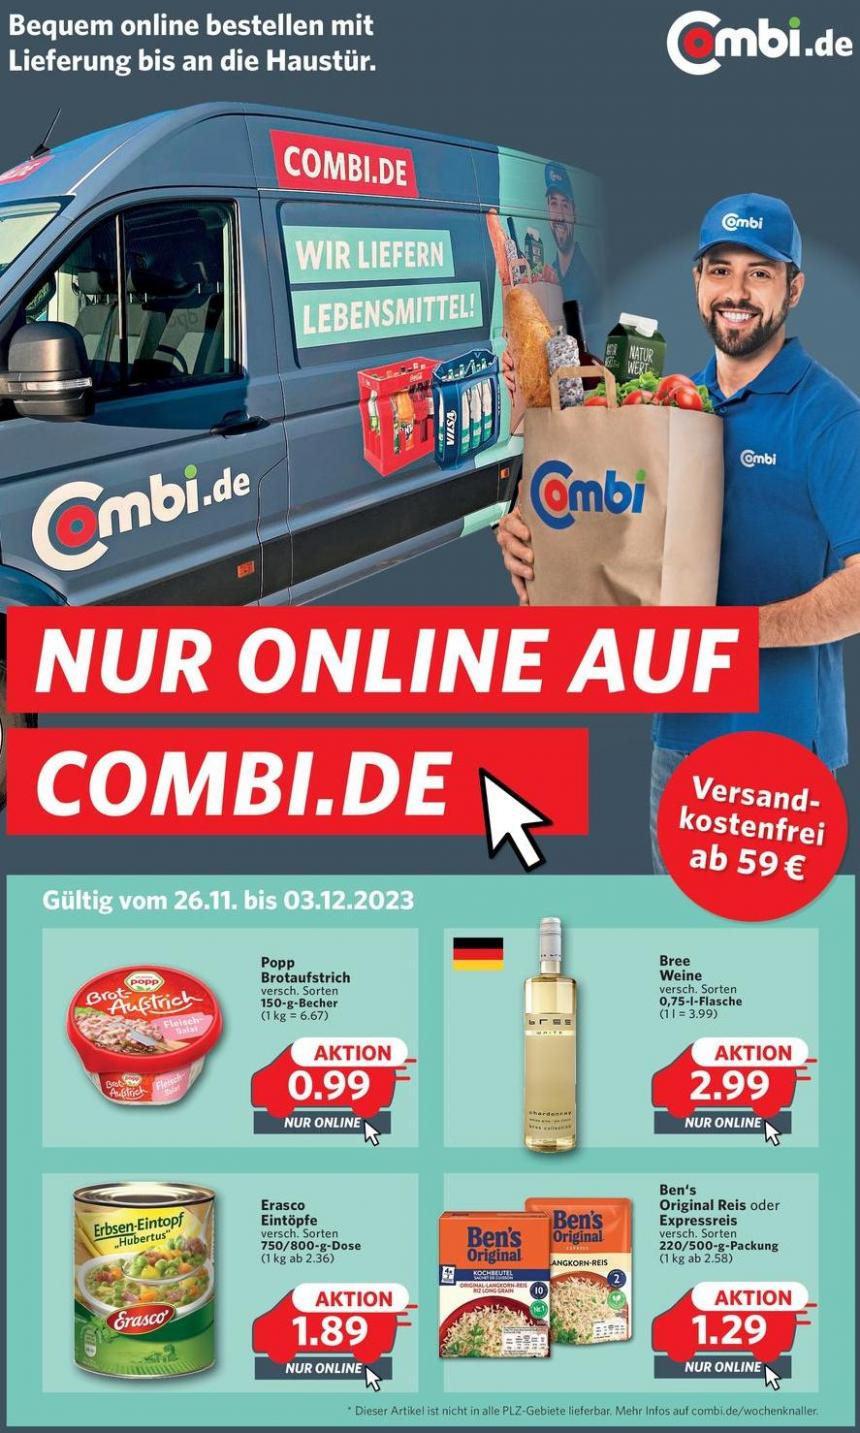 Nur online auf combi.de. Combi Markt (2023-12-03-2023-12-03)